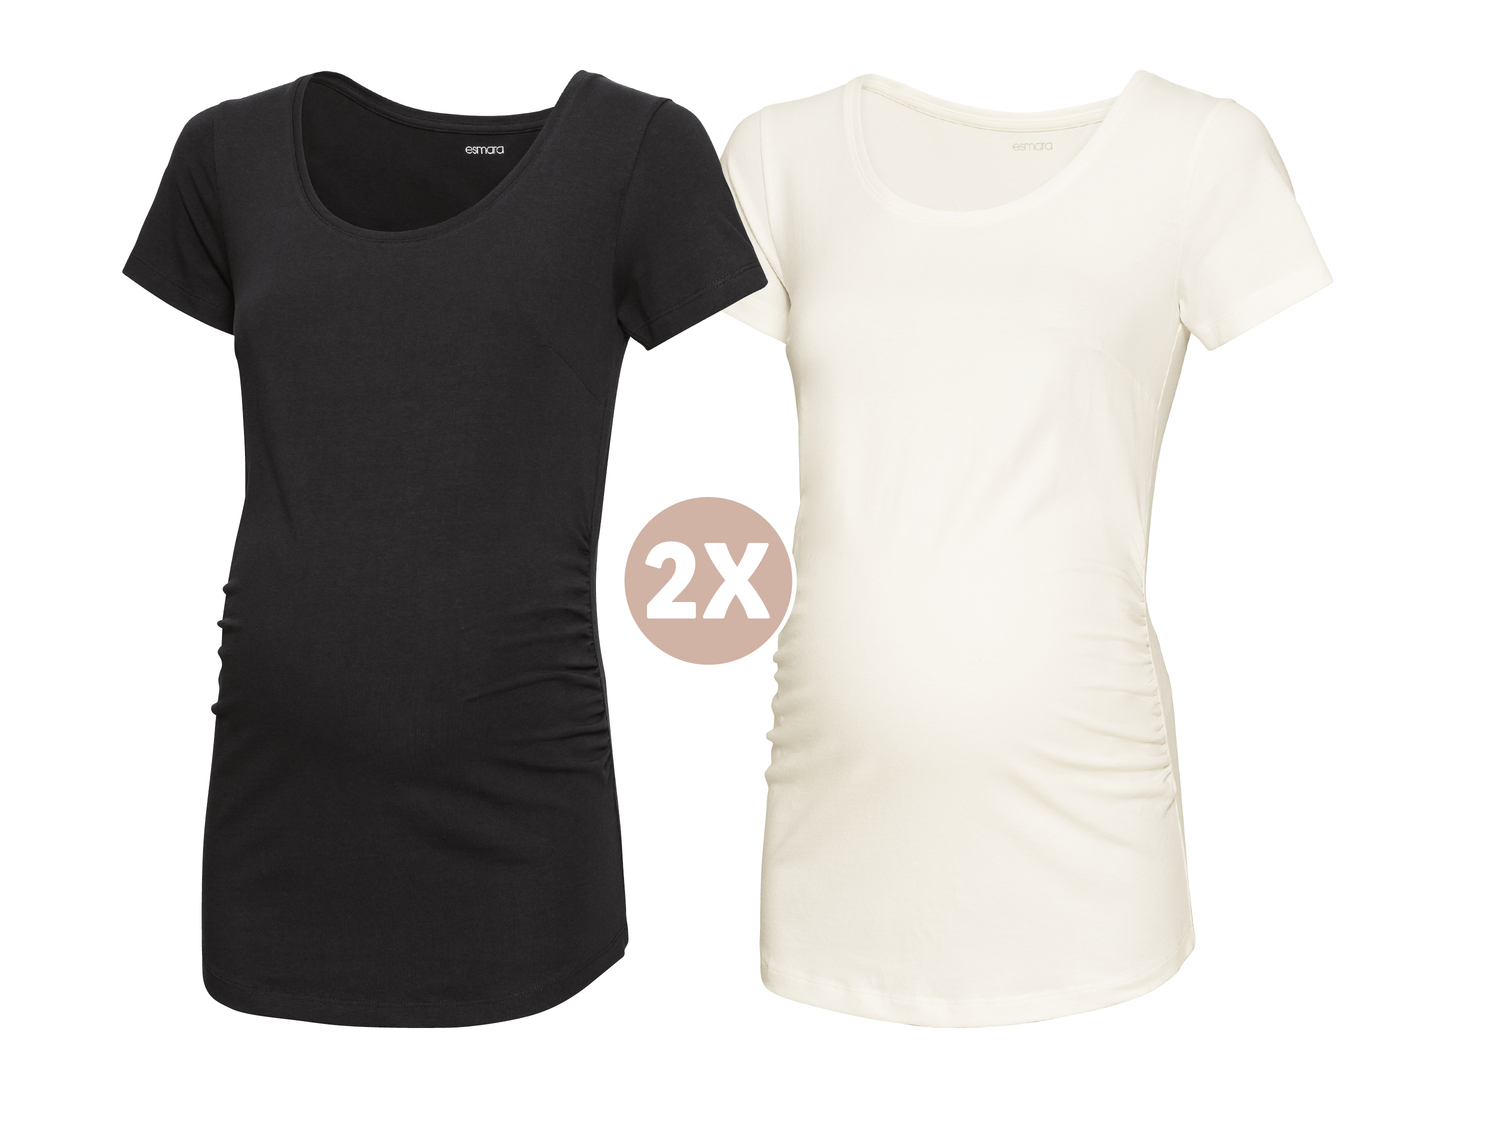 T-shirty ciążowe, 2 szt. Esmara, cena 9,99 PLN 
- różne wzory i rozmiary
Opis

- ...